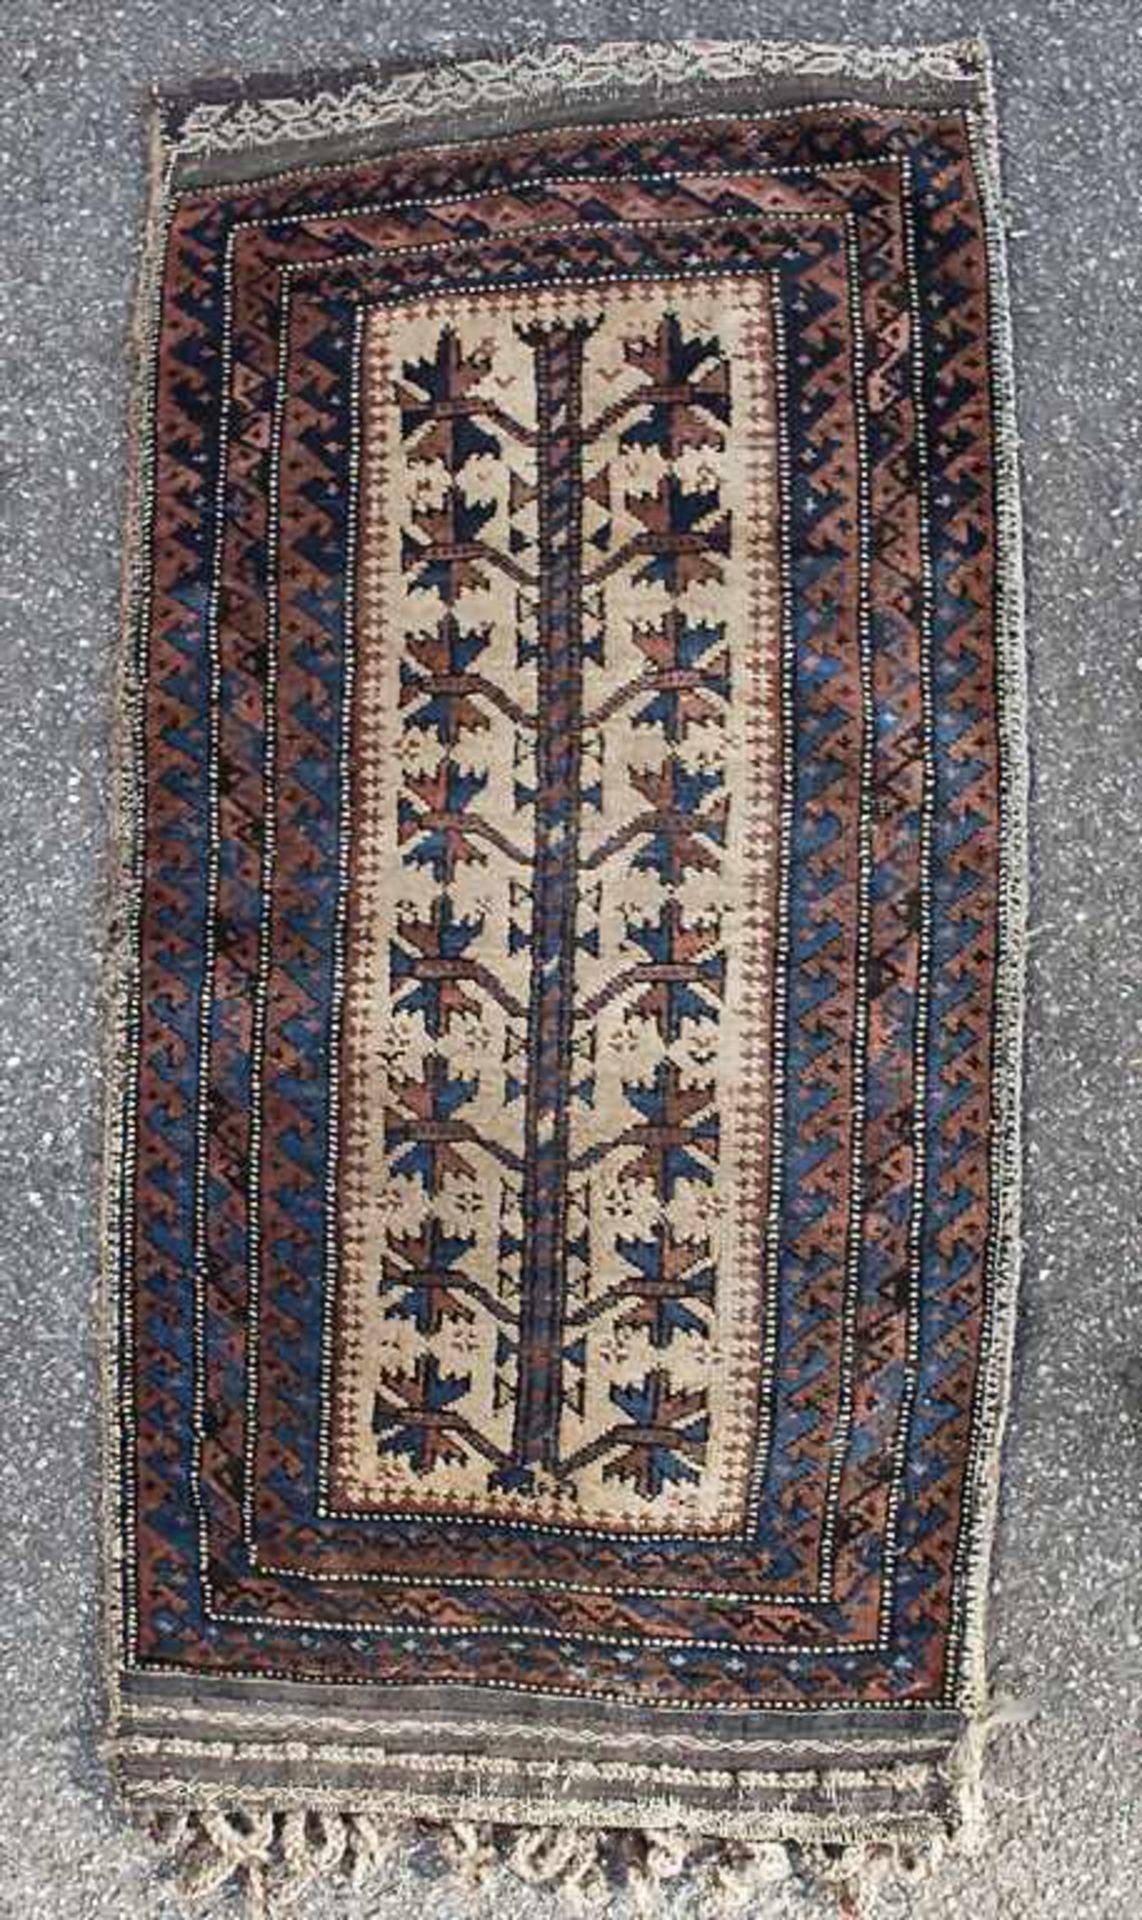 Orientteppich, Zelttasche / An oriental carpet, tentbag